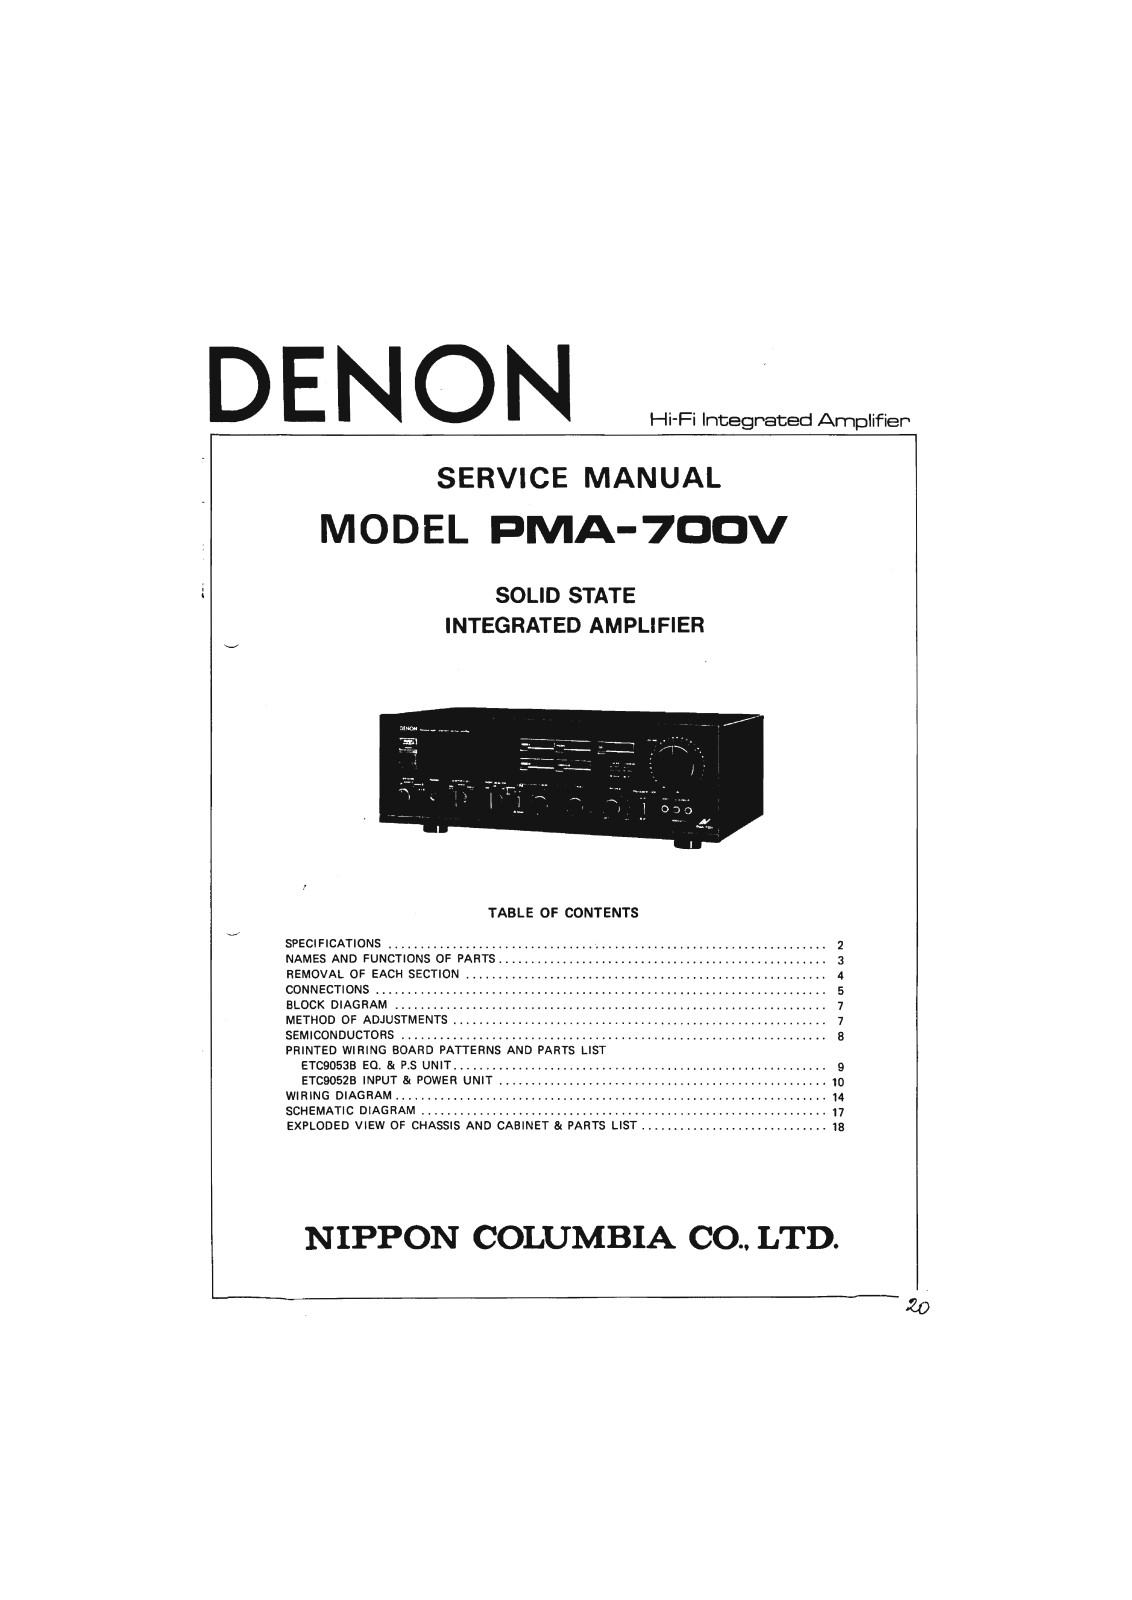 Denon PMA-700V Service Manual